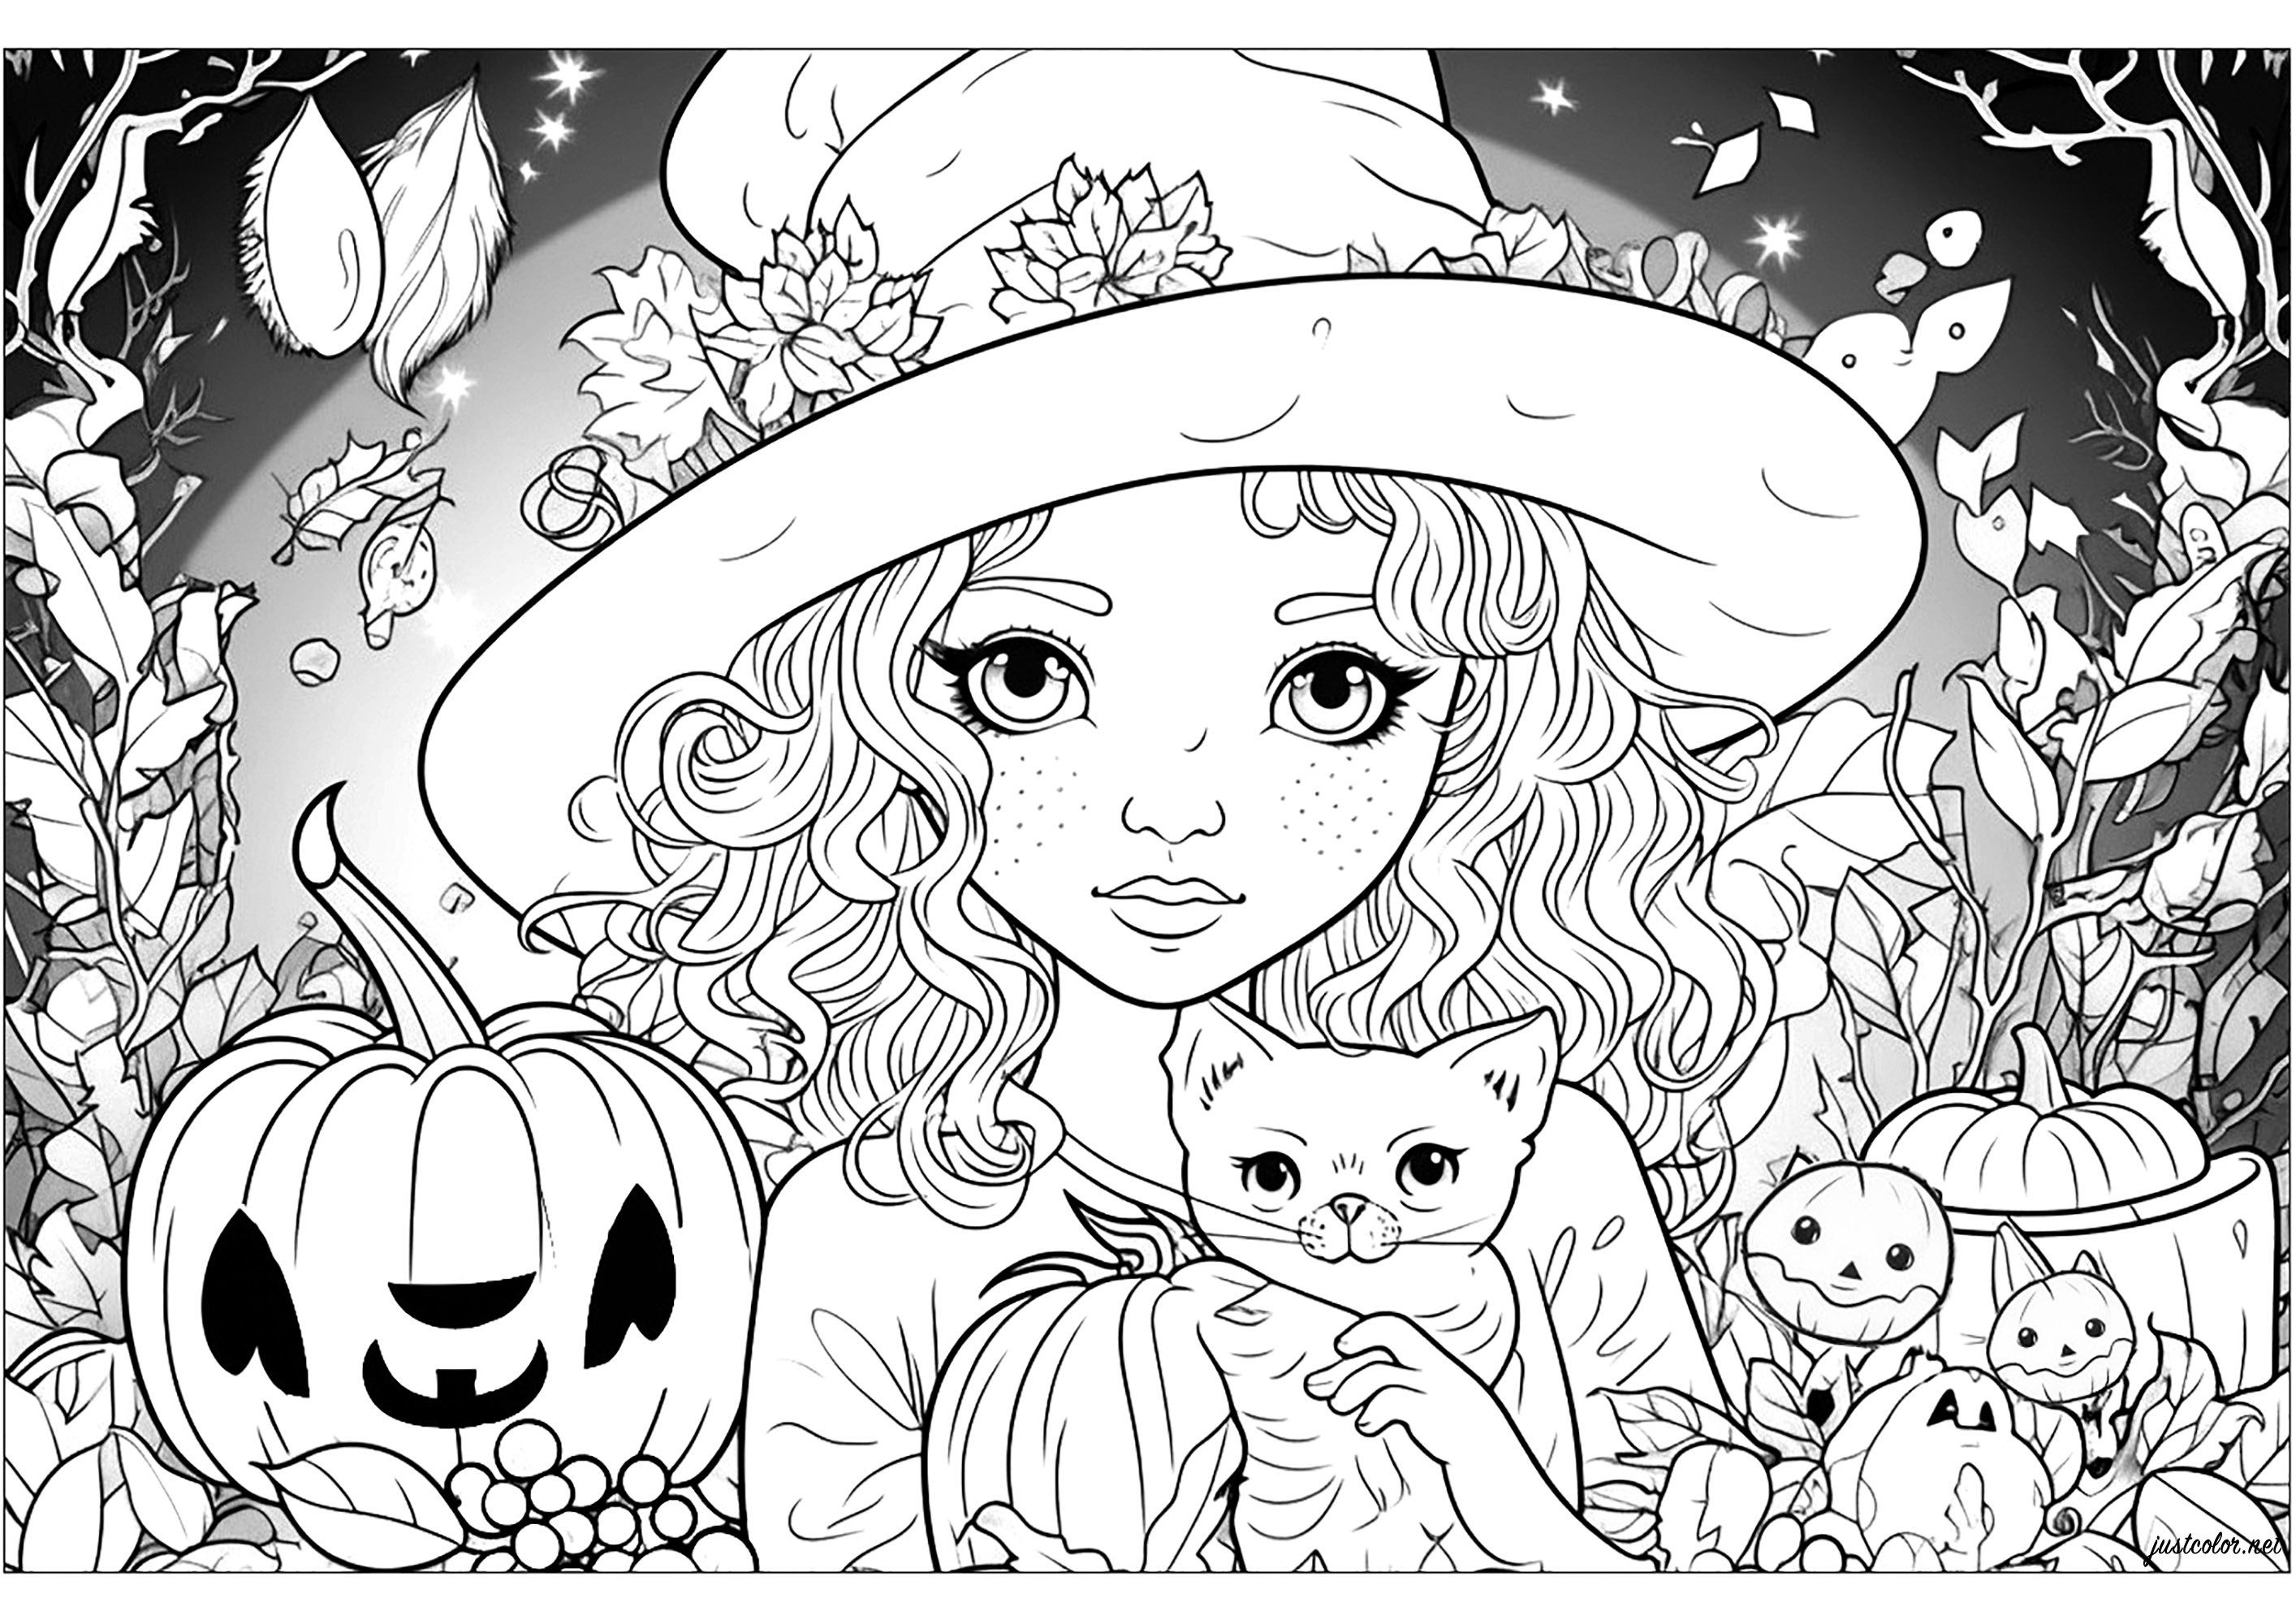 La giovane strega e il suo gatto. Colorate i numerosi dettagli e le strane creature che circondano questa graziosa strega.